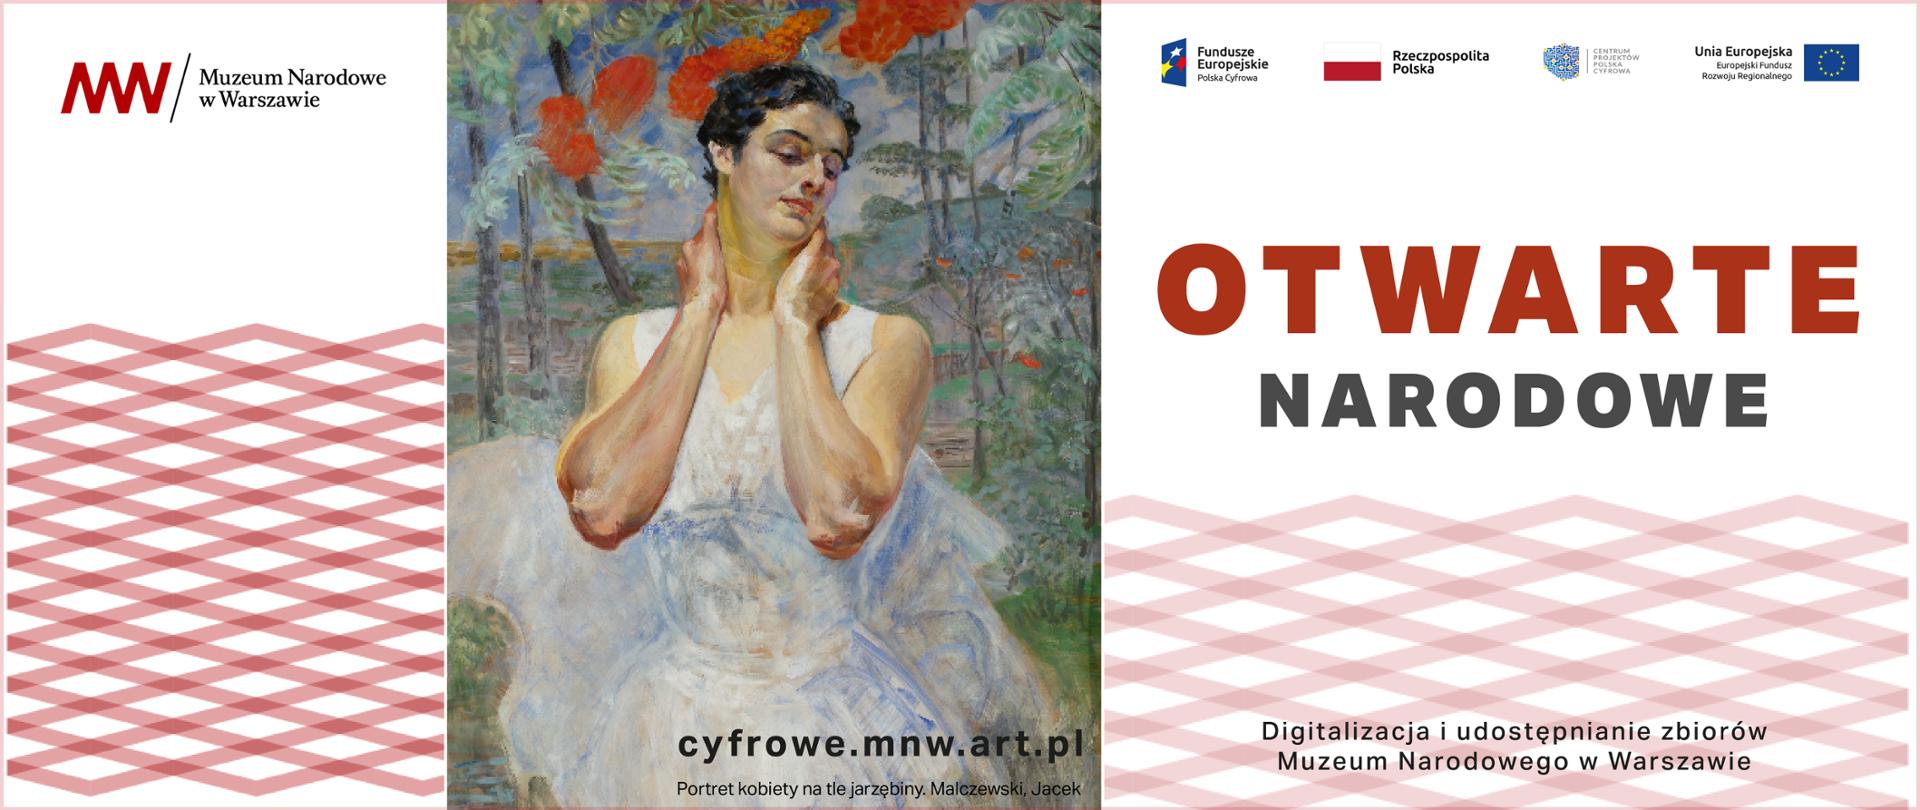 Otwarte Narodowe. Digitalizacja i udostępnianie zbiorów Muzeum Narodowego w Warszawie.